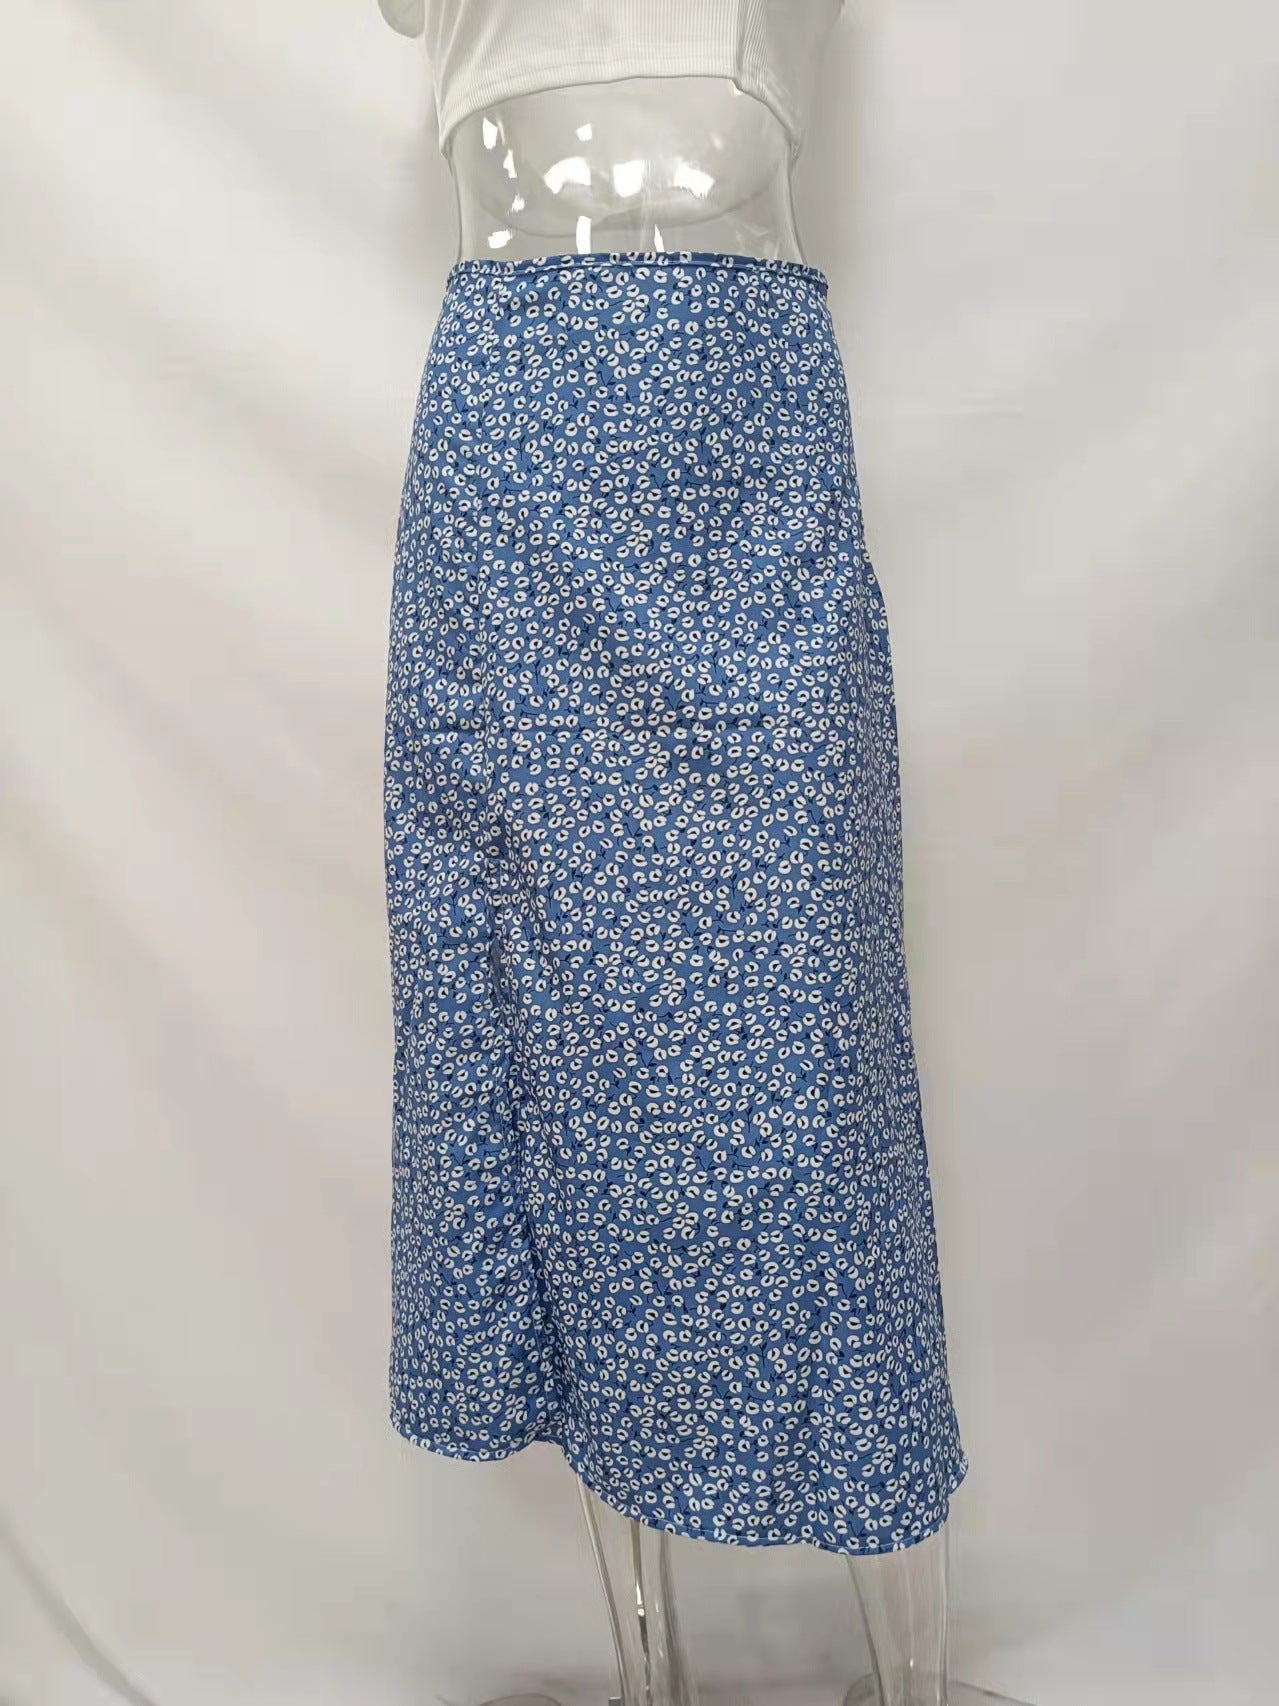 Fabulously Fierce Leopard Mini Skirt - Blue